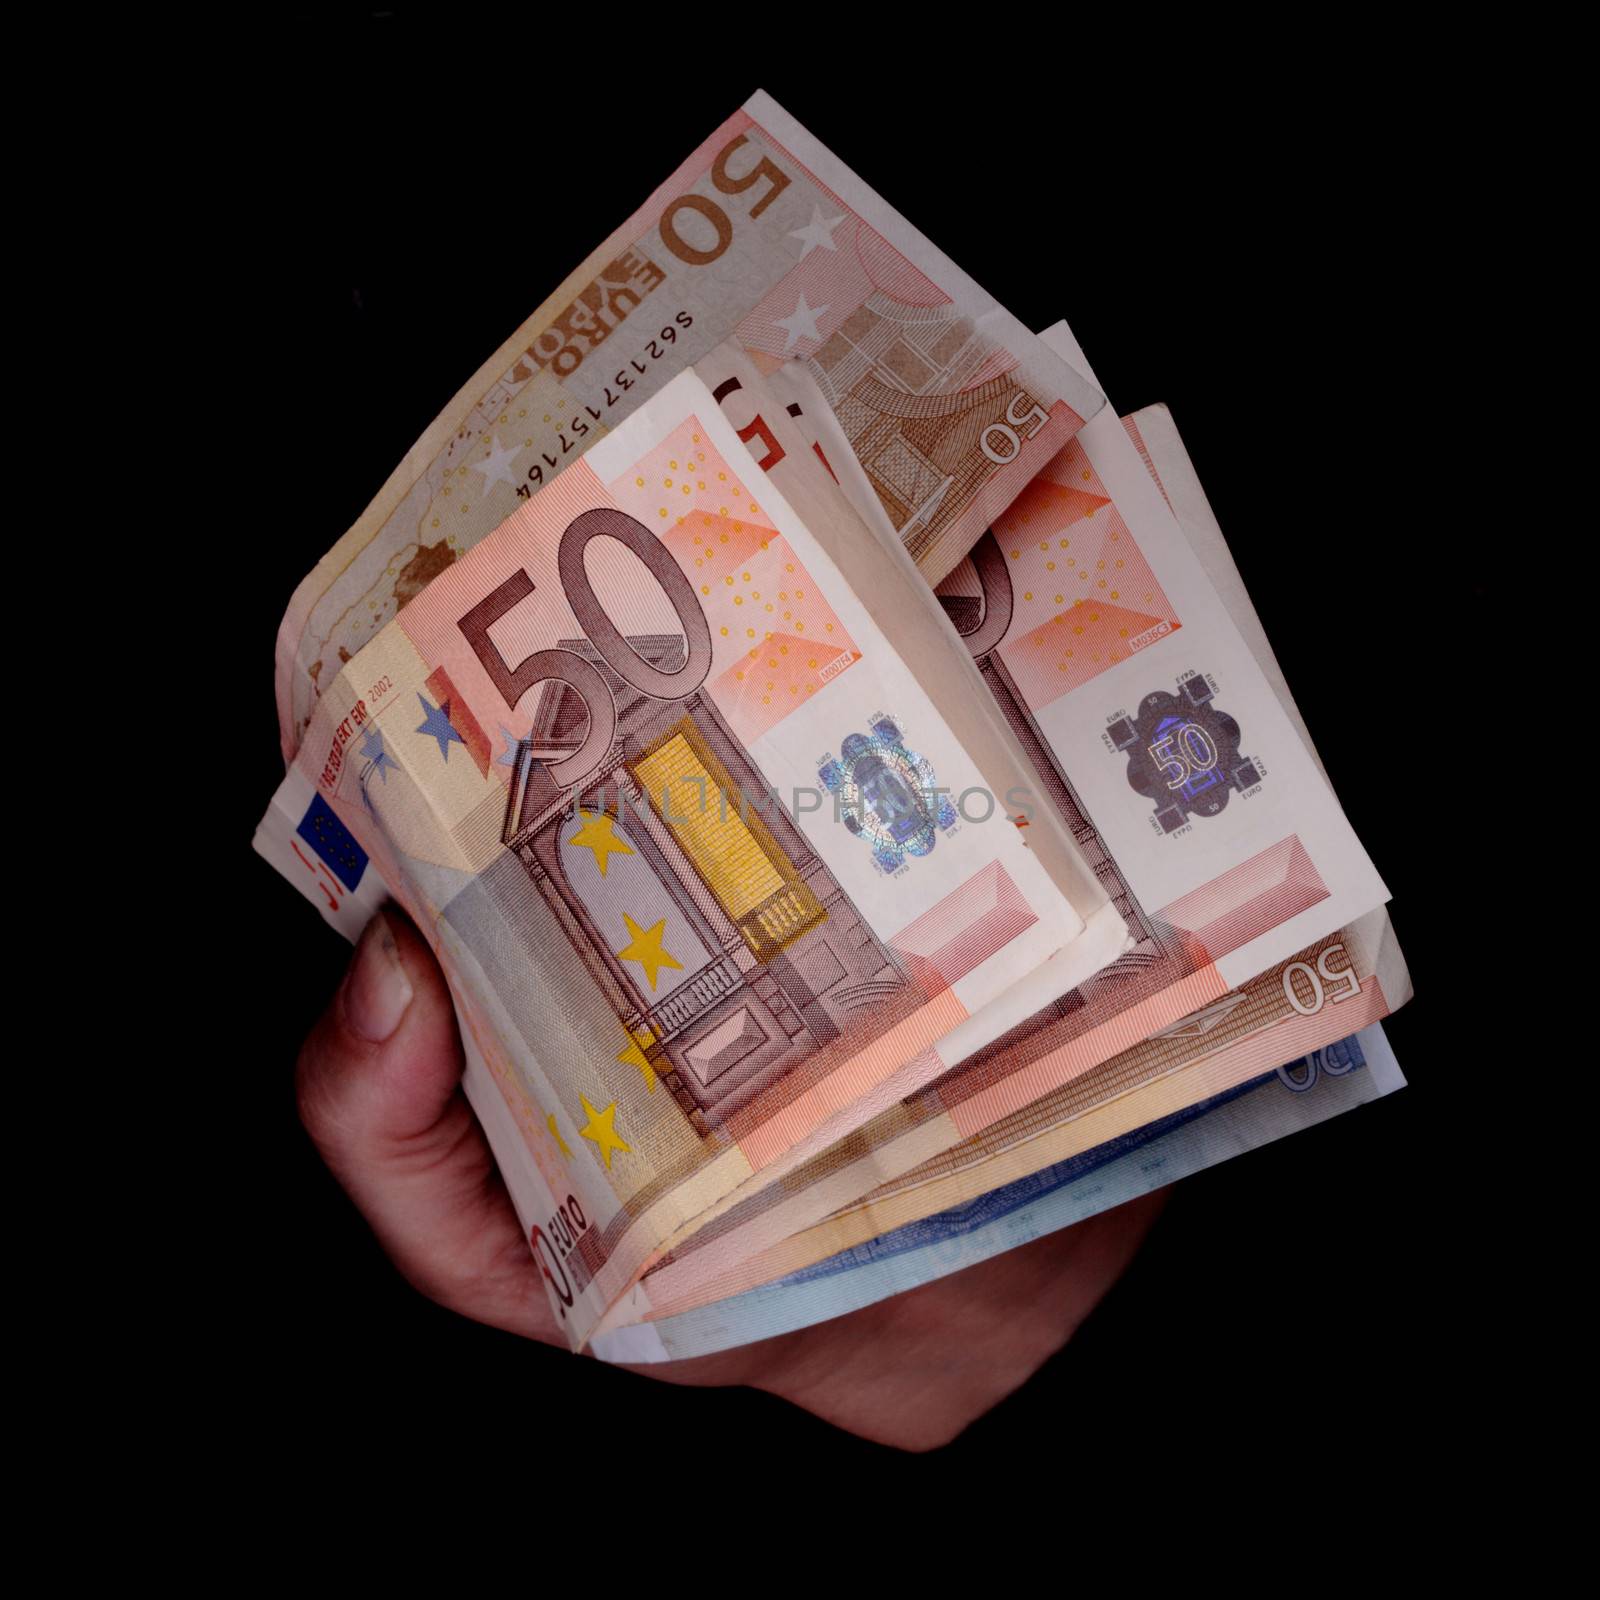 dirty hands grabbing Euro banknotes